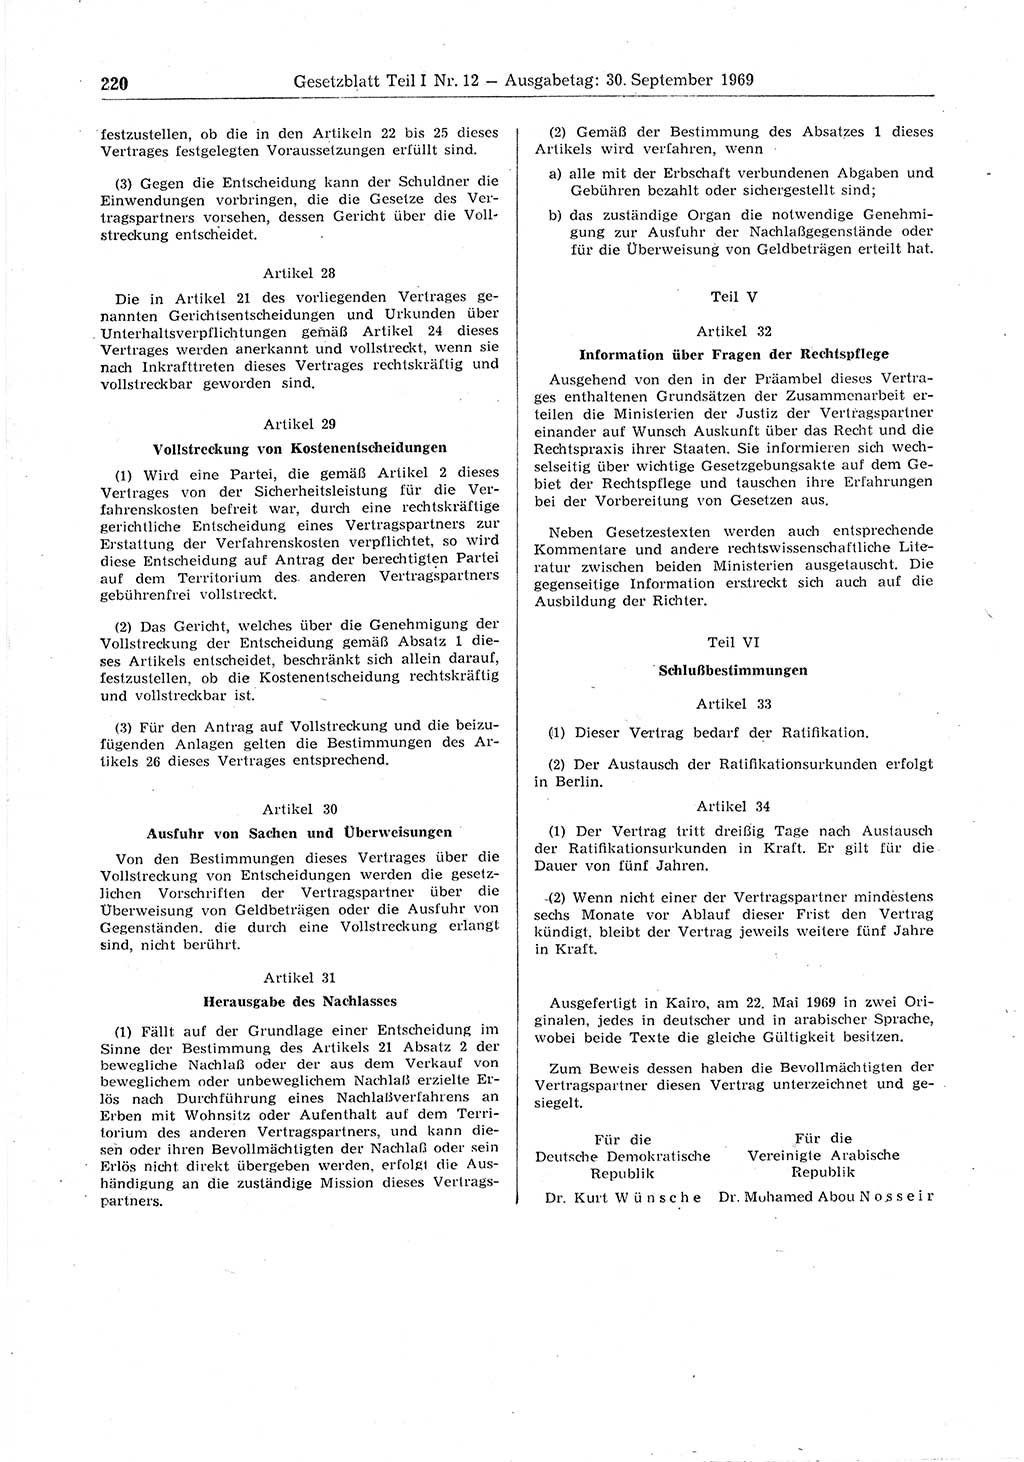 Gesetzblatt (GBl.) der Deutschen Demokratischen Republik (DDR) Teil Ⅰ 1969, Seite 220 (GBl. DDR Ⅰ 1969, S. 220)